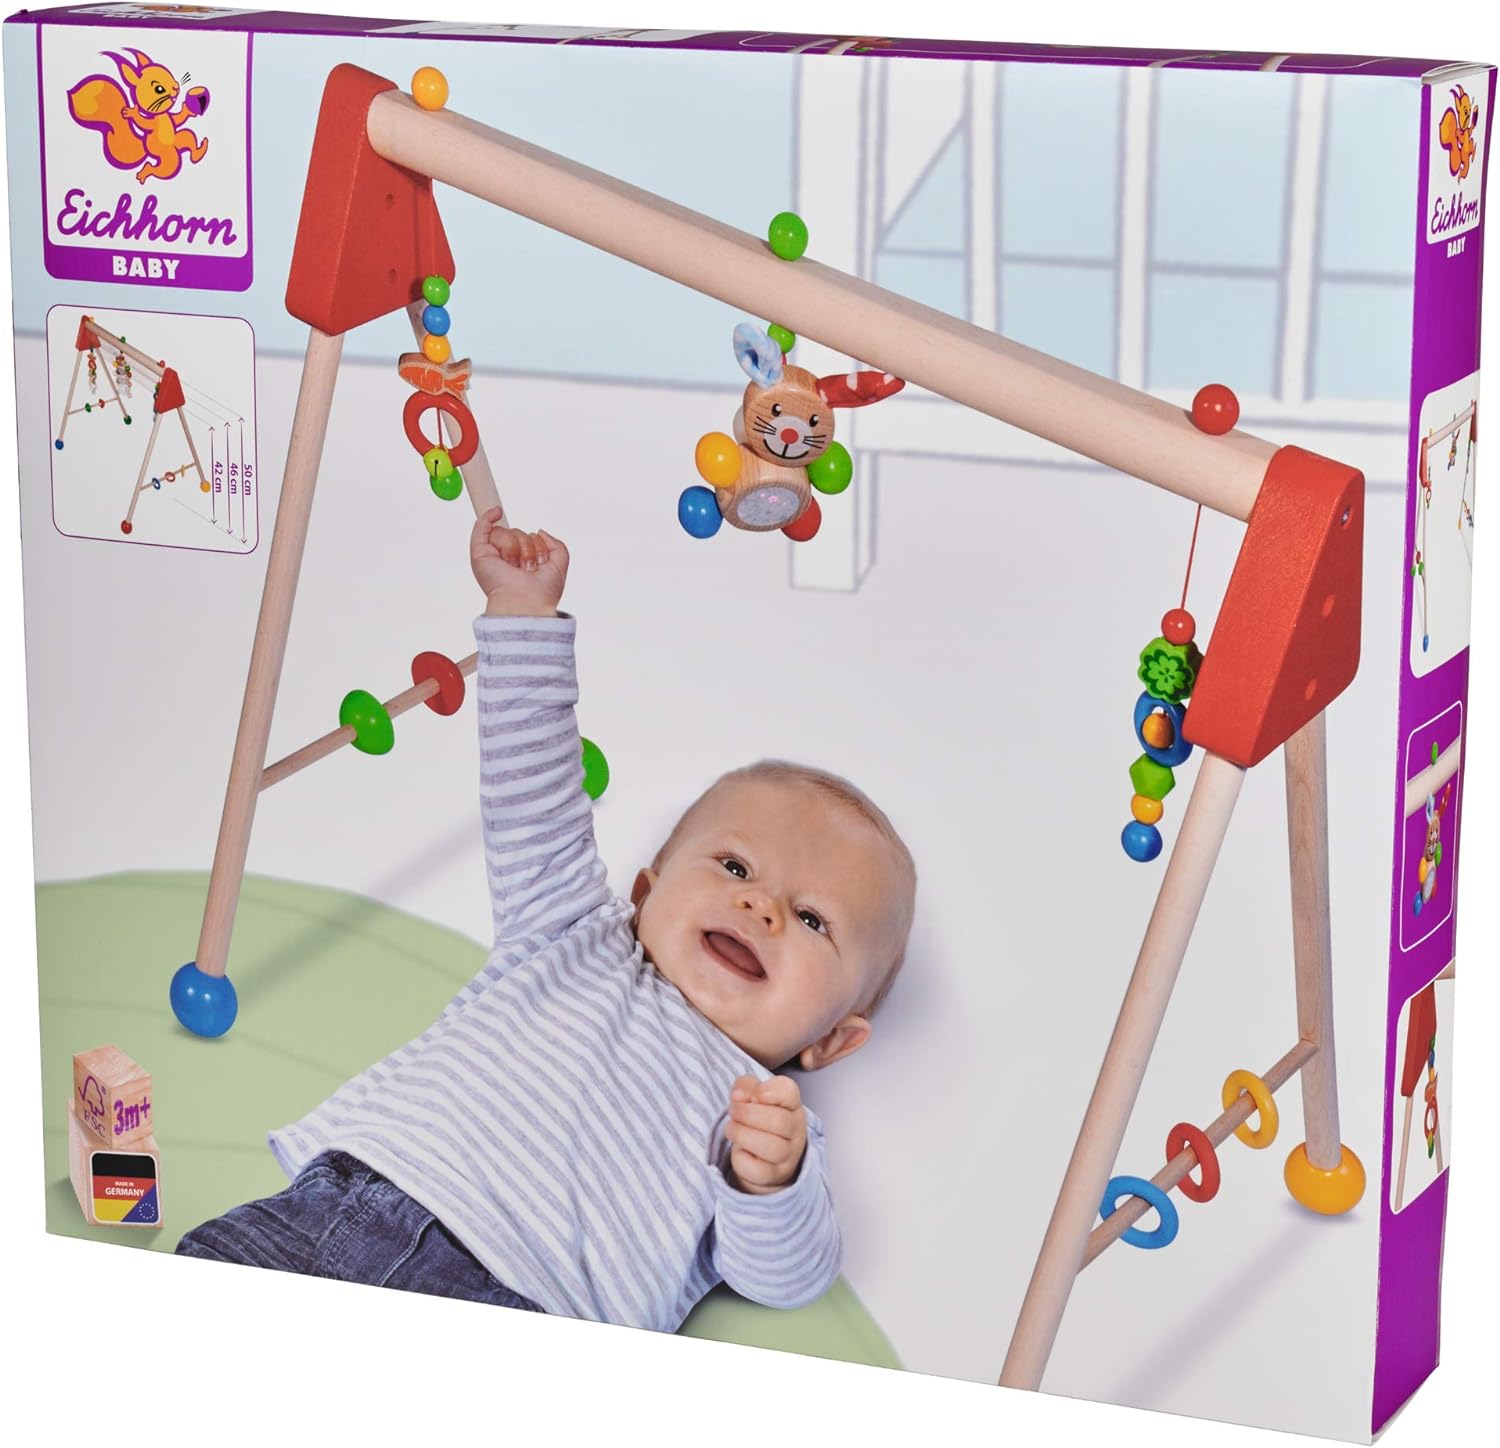 Eichhorn Baby Holz-Gym Spielbogen mit Hasenmotiv 100017034  Eichhorn   